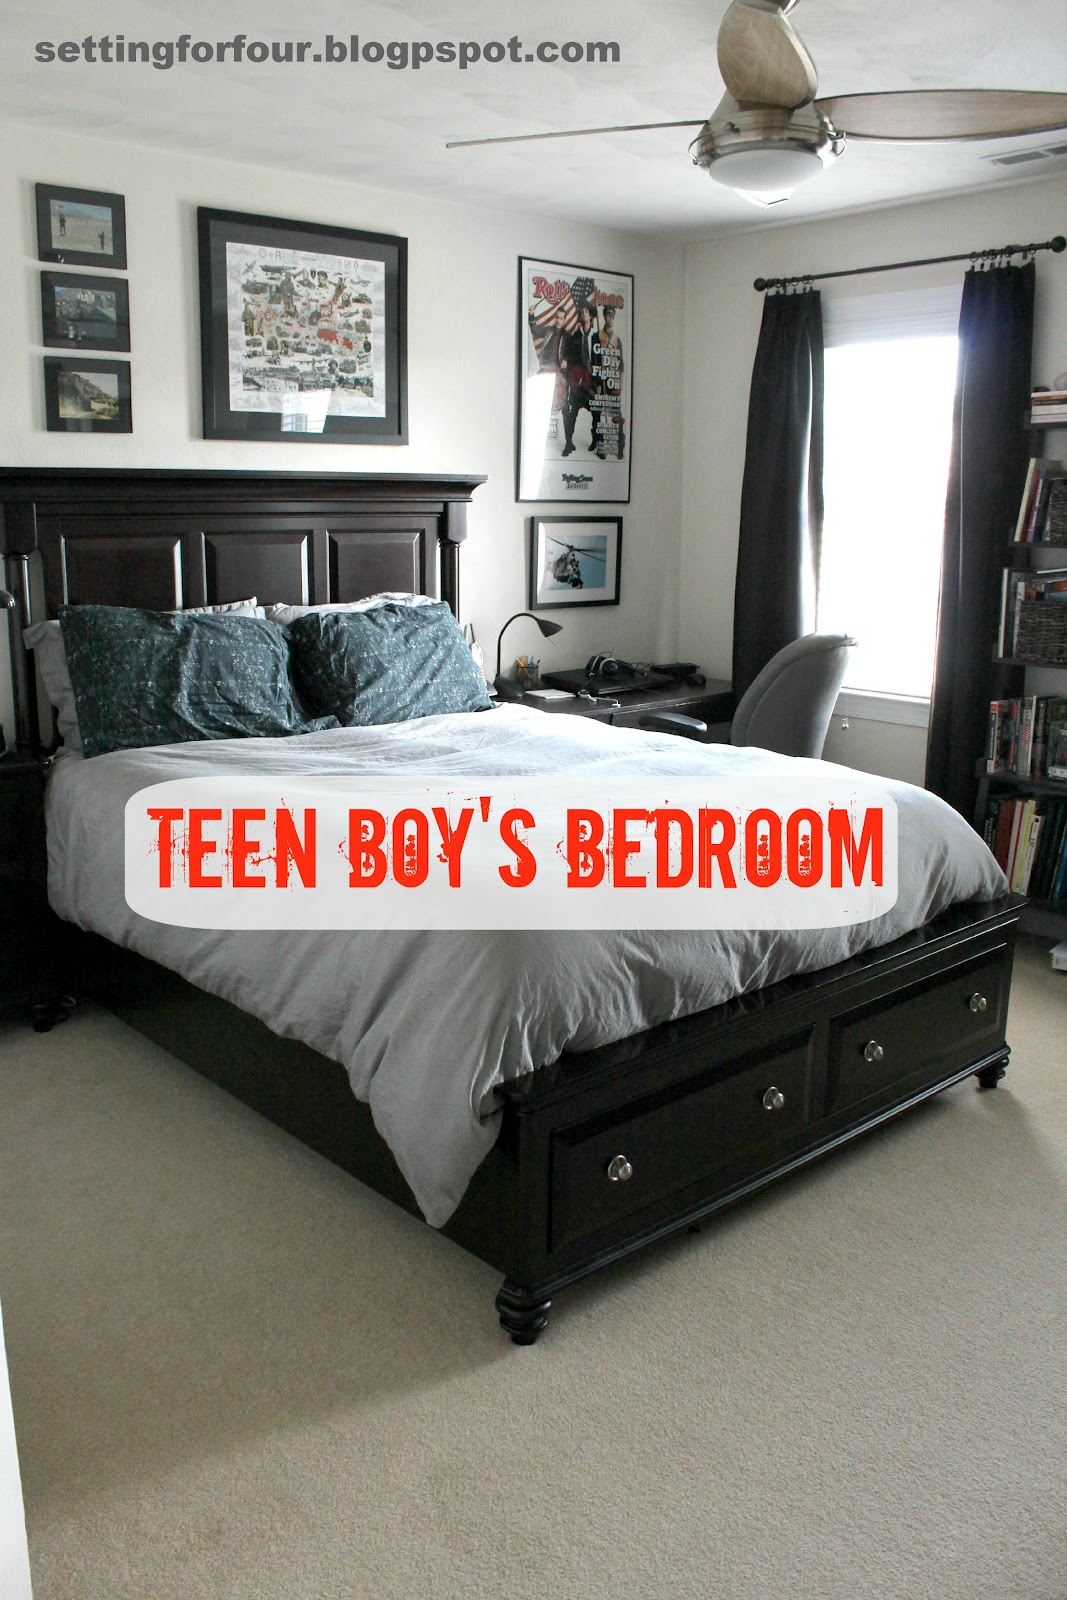 teenage boy bedroom